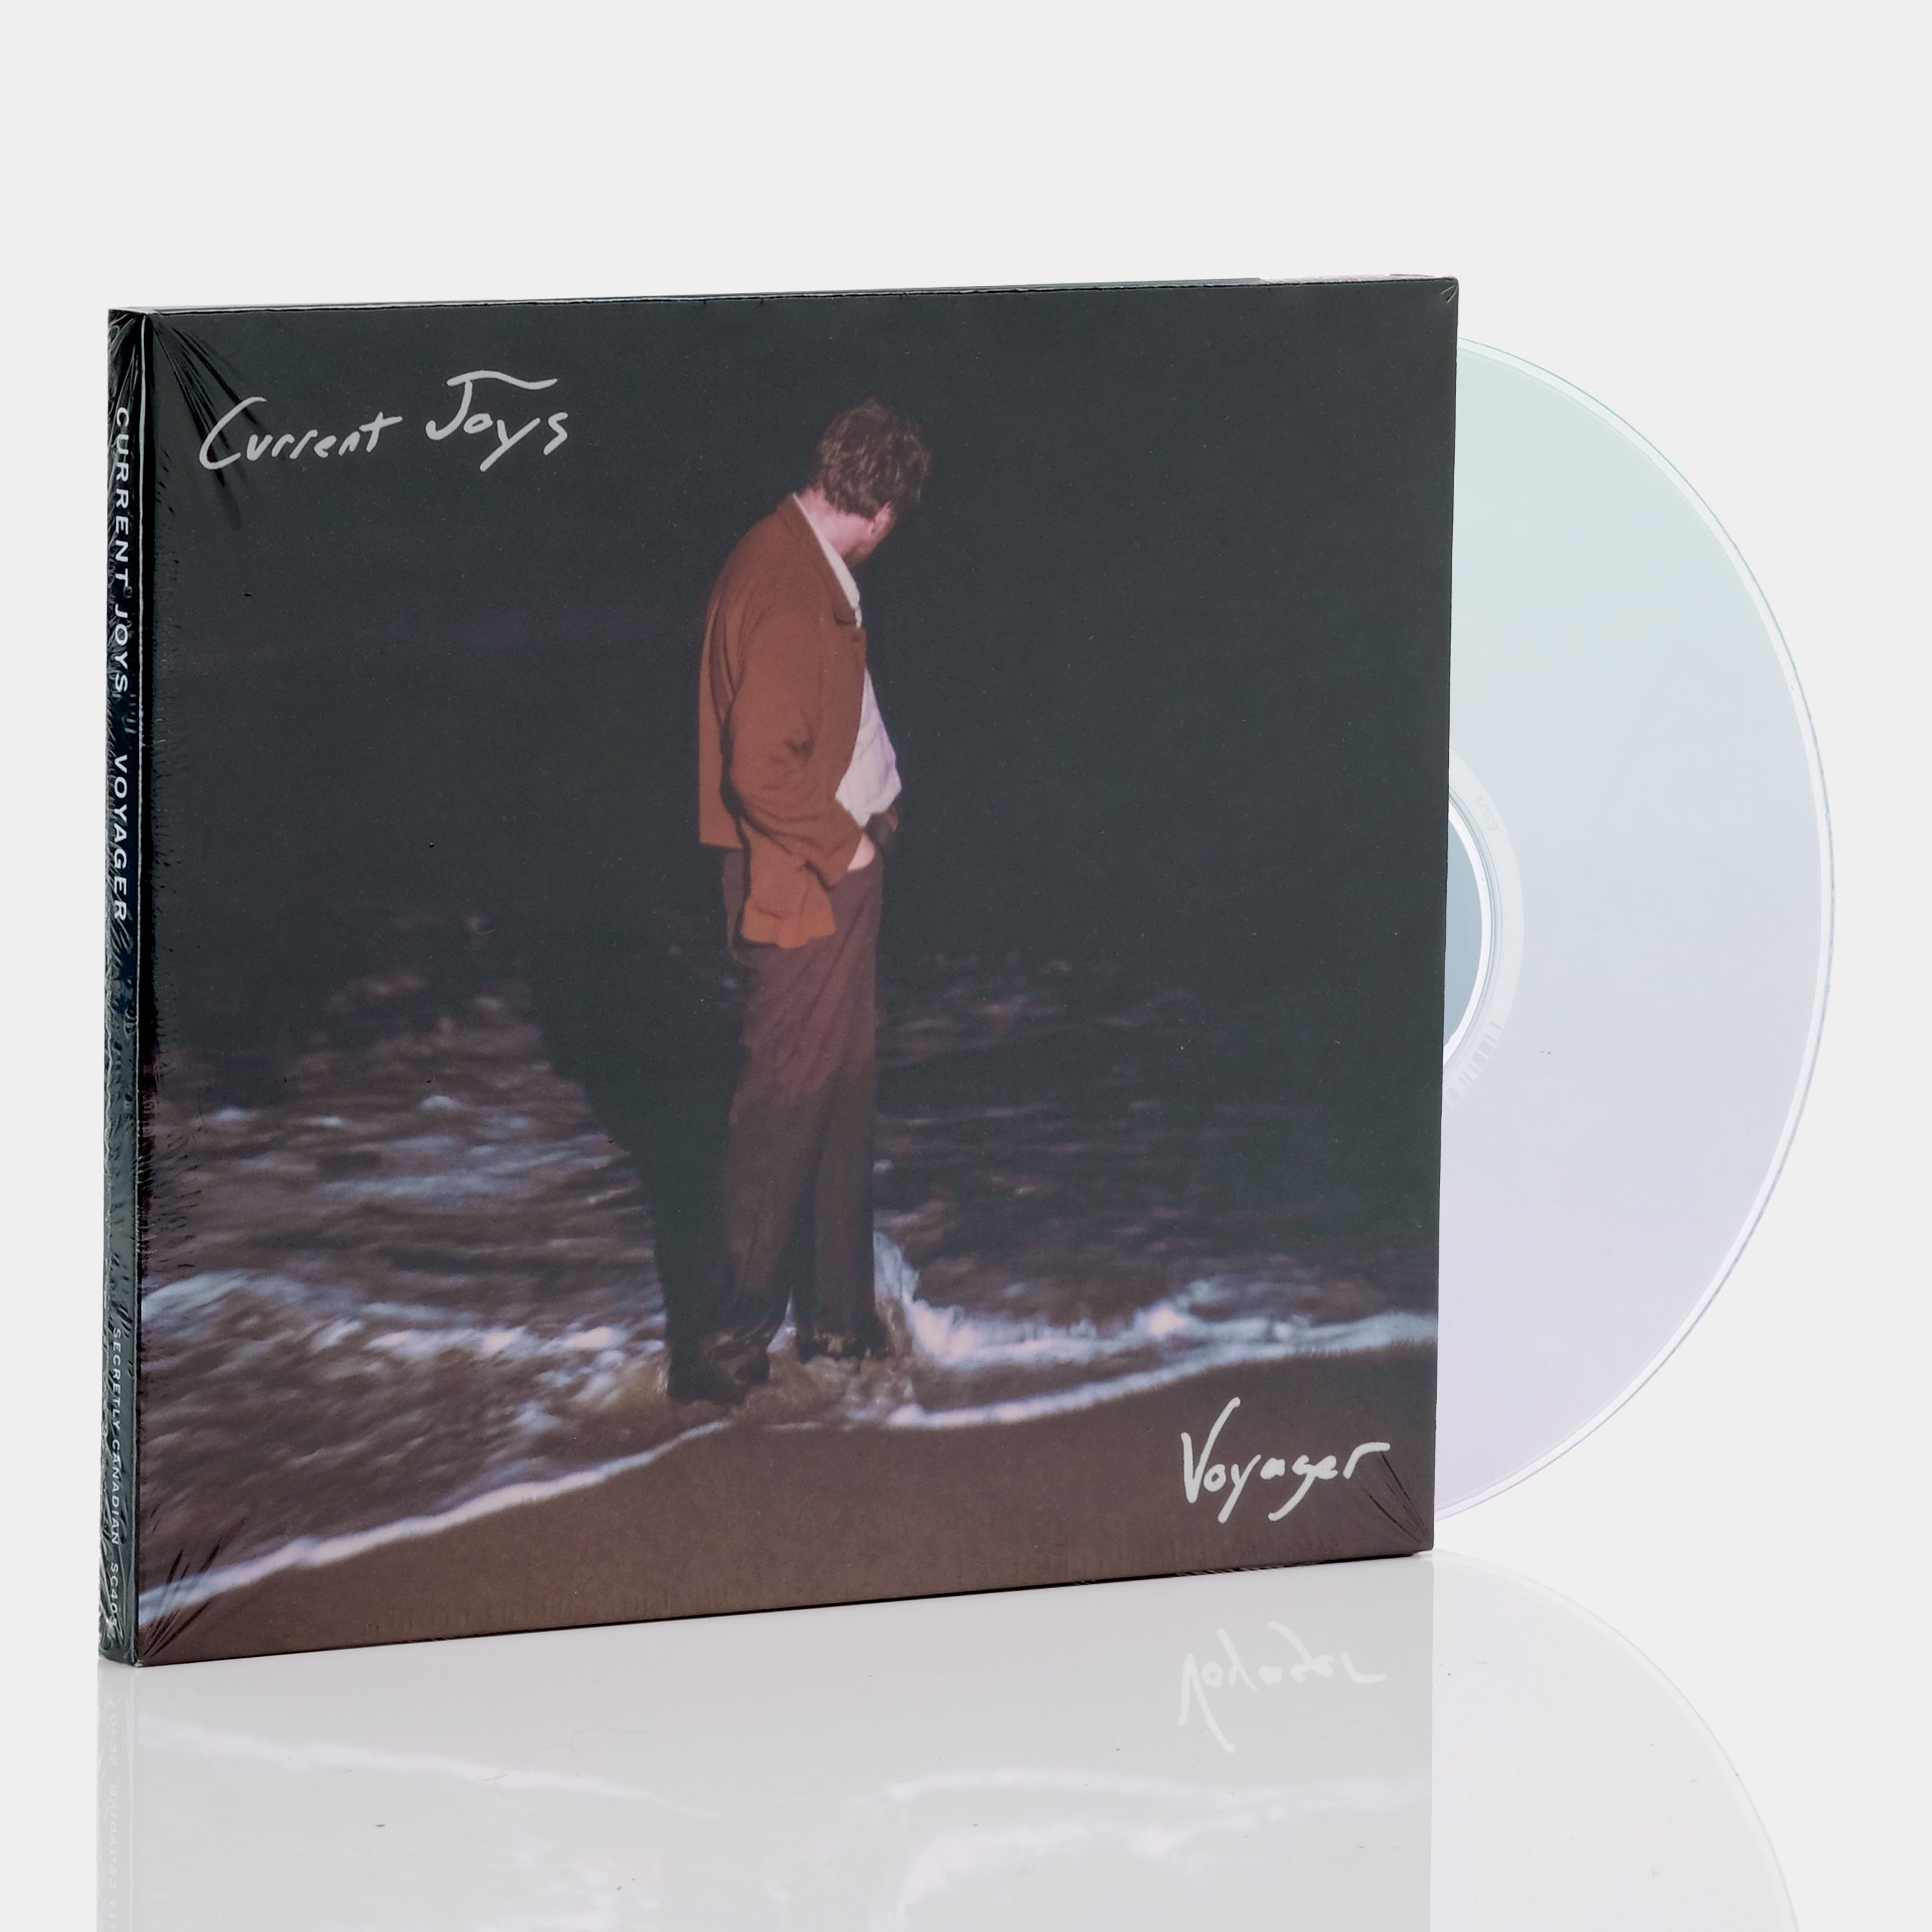 Current Joys - Voyager CD